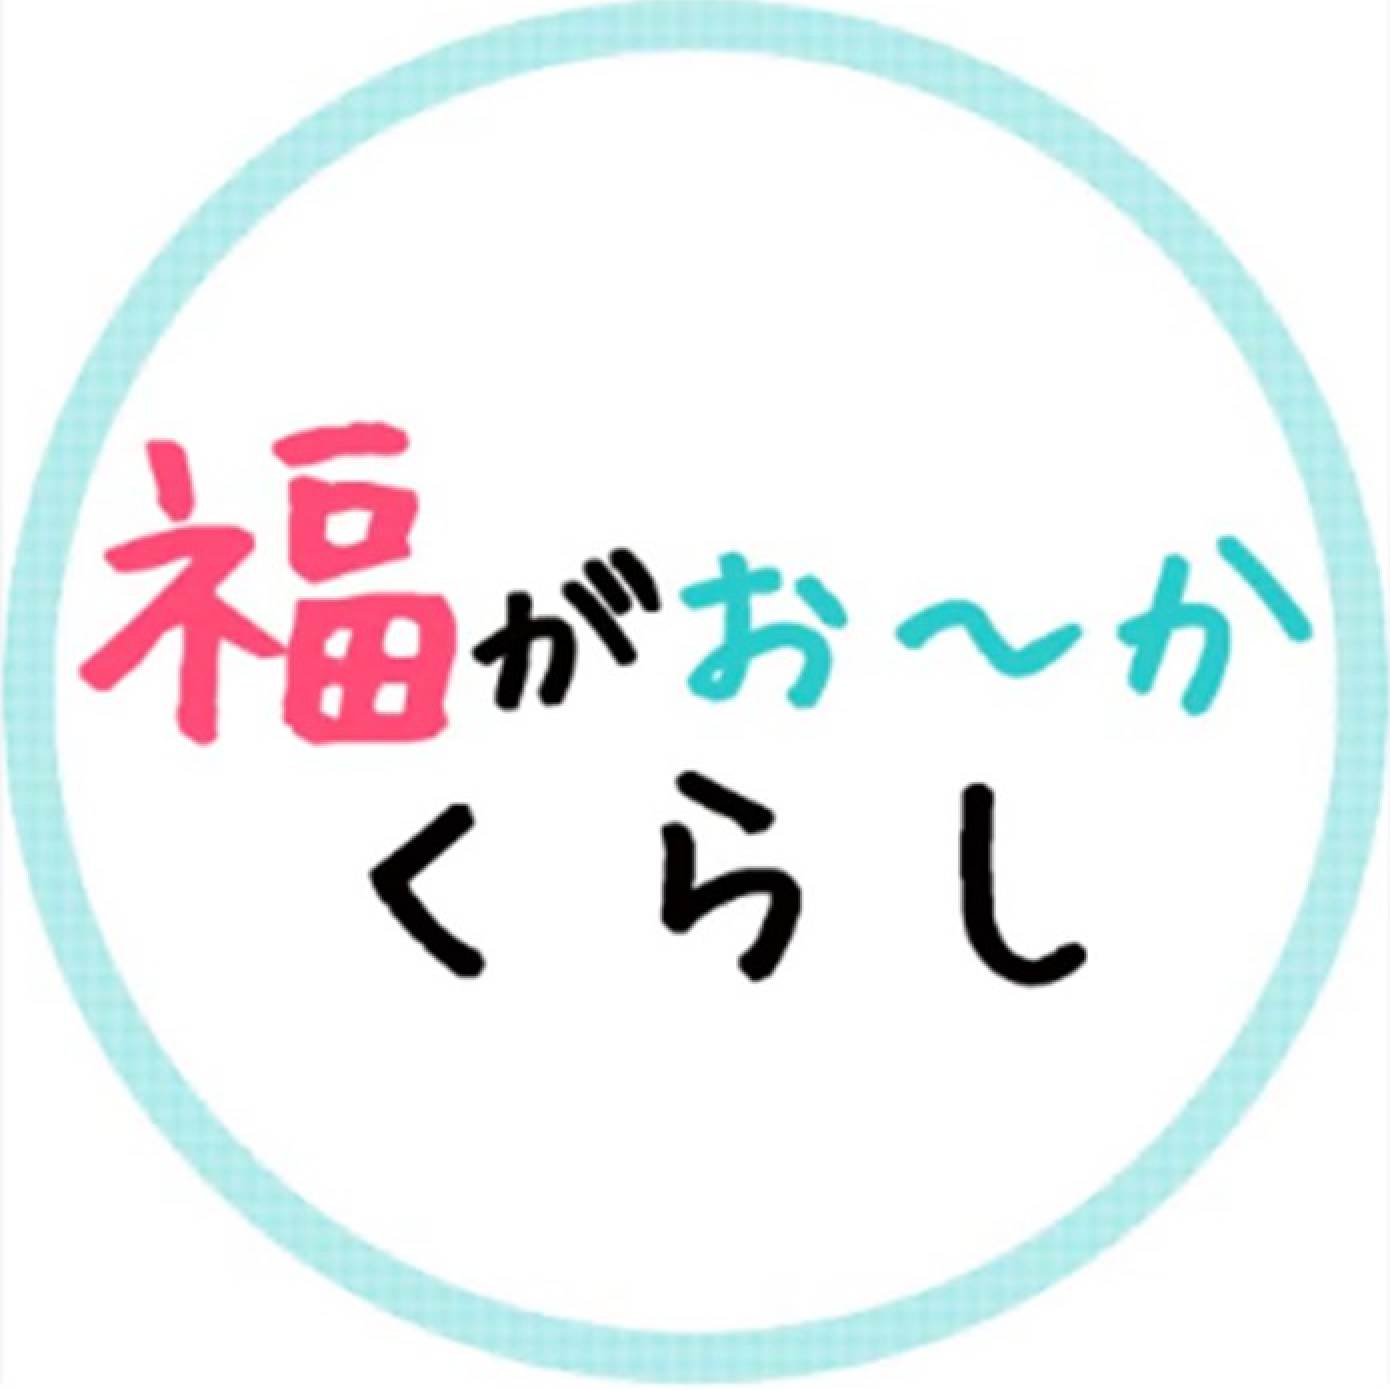 福岡県市町村振興局政策支援課のアバター